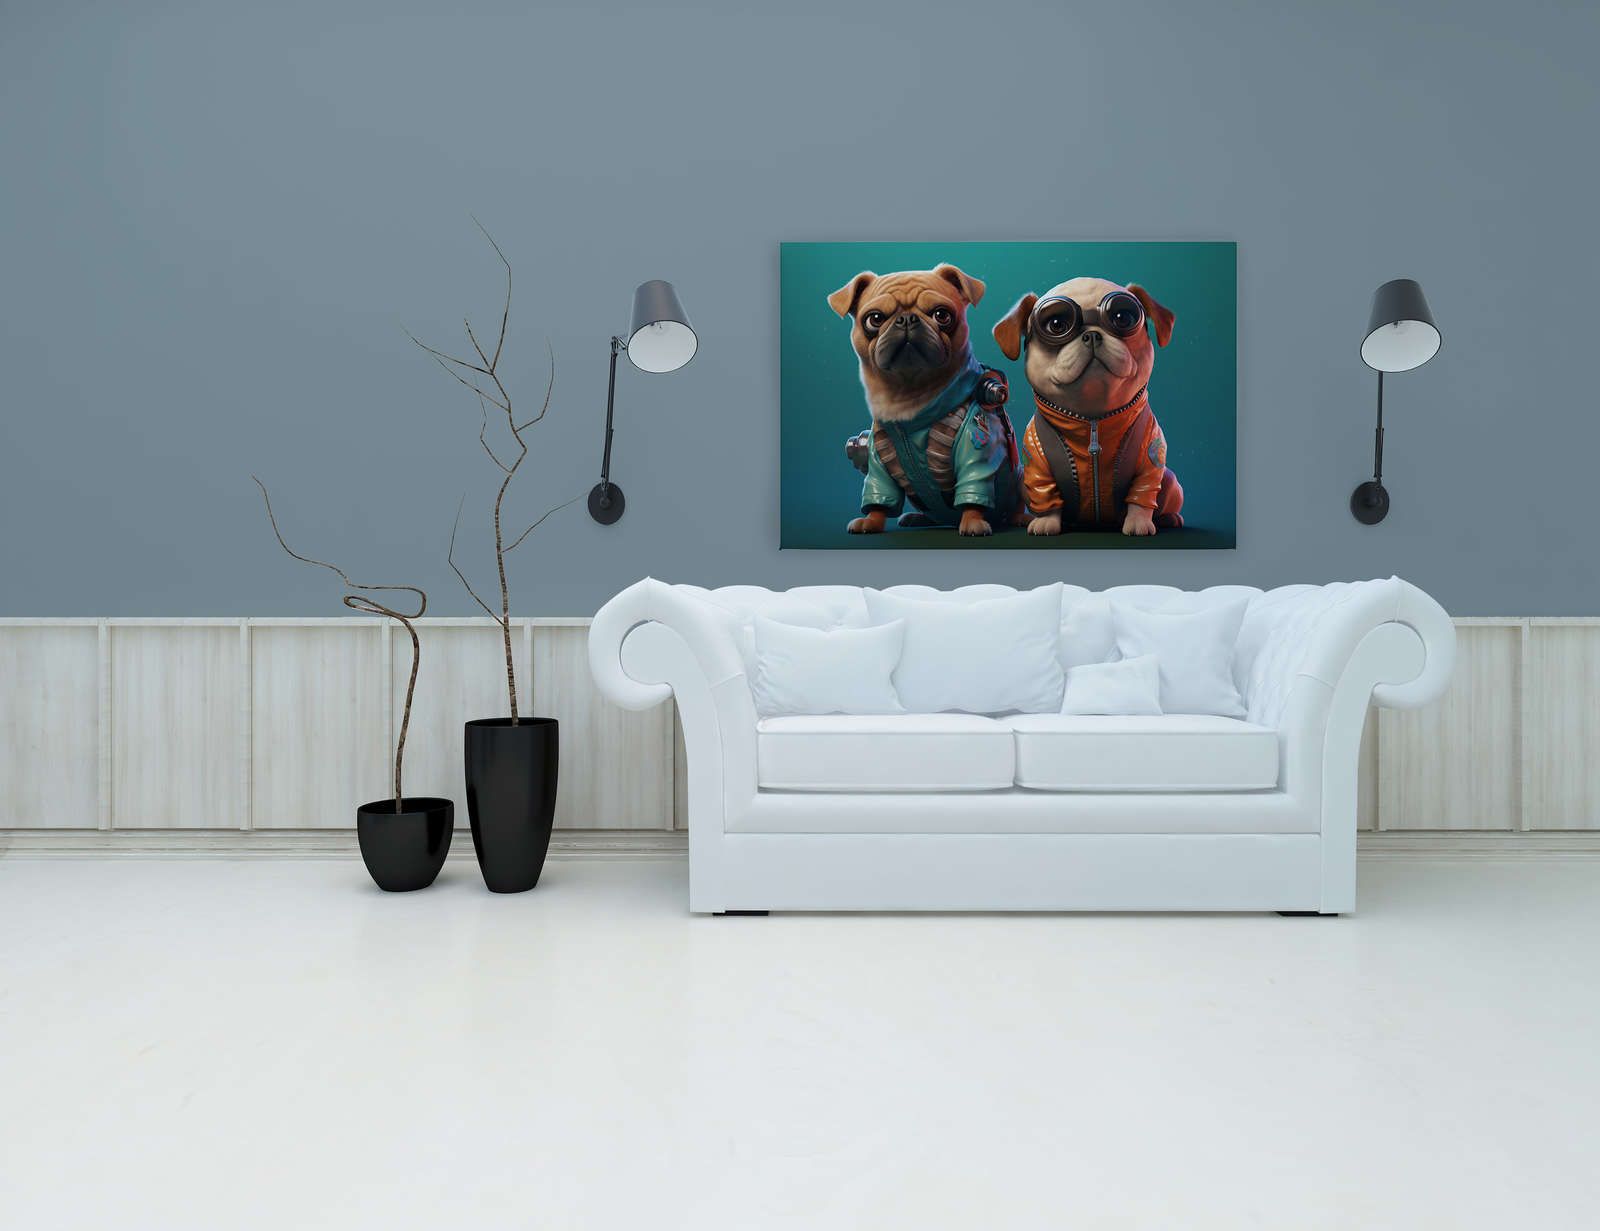             KI-Leinwandbild »Cute Dogs« – 120 cm x 80 cm
        